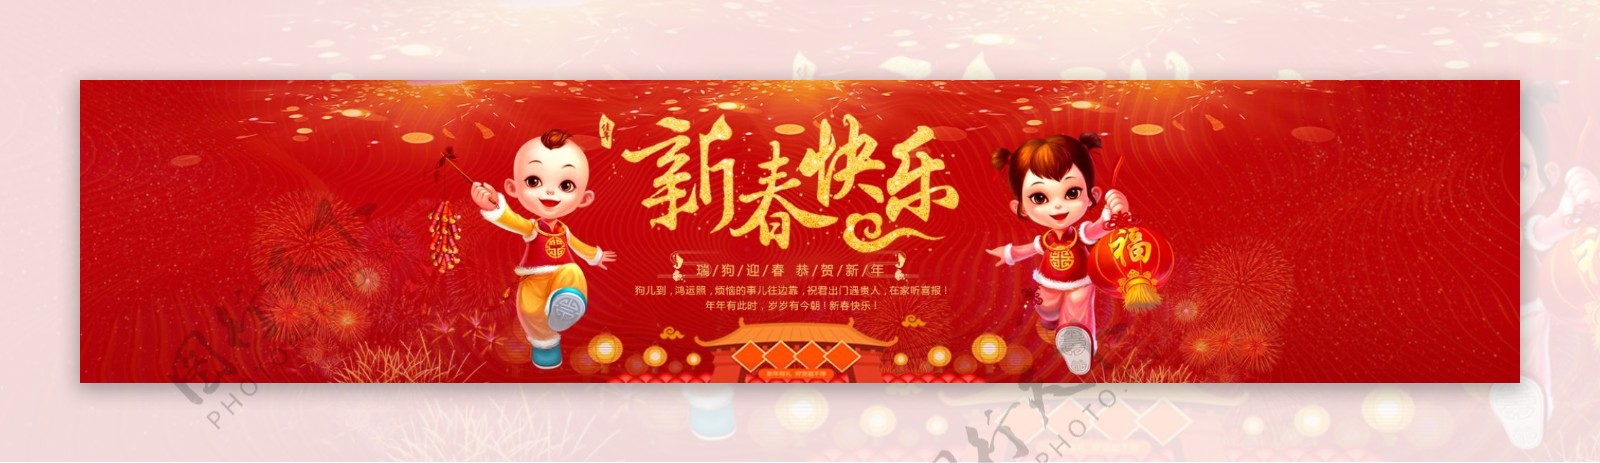 新年快乐banner广告图设计psd